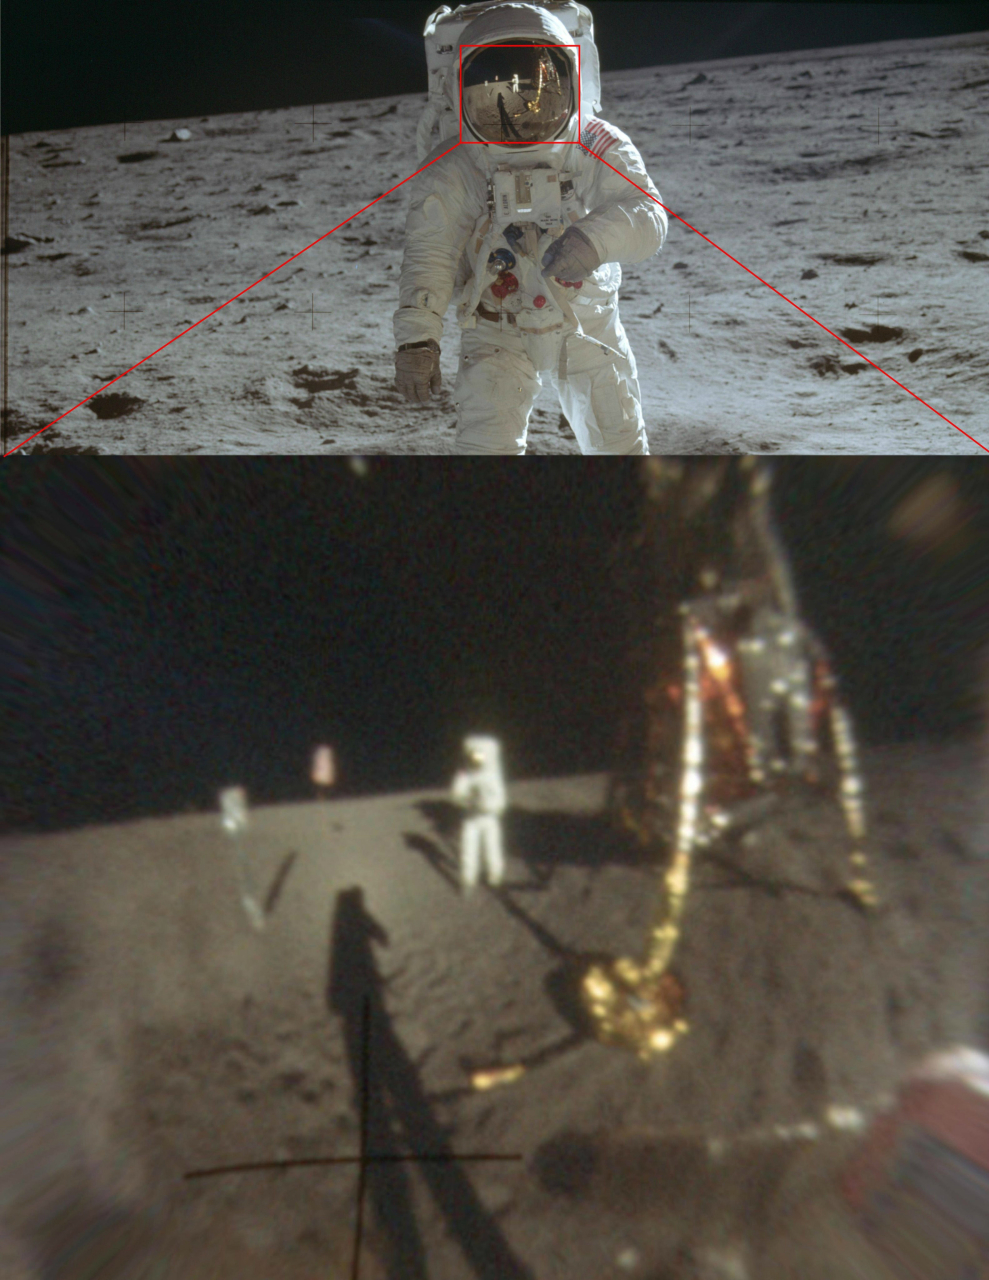 Ученые увеличили четкость фотографий высадки на Луну и показали в деталях отражение на шлеме Армстронга Армстронг, считали, теории, отражается, отражение, фотографию, Сторонники, чтото, шлема, стекле, Олдрина, снимает, самую, спорную, павильонНо, наконец, снимкеИ, видно, заело, флагштока